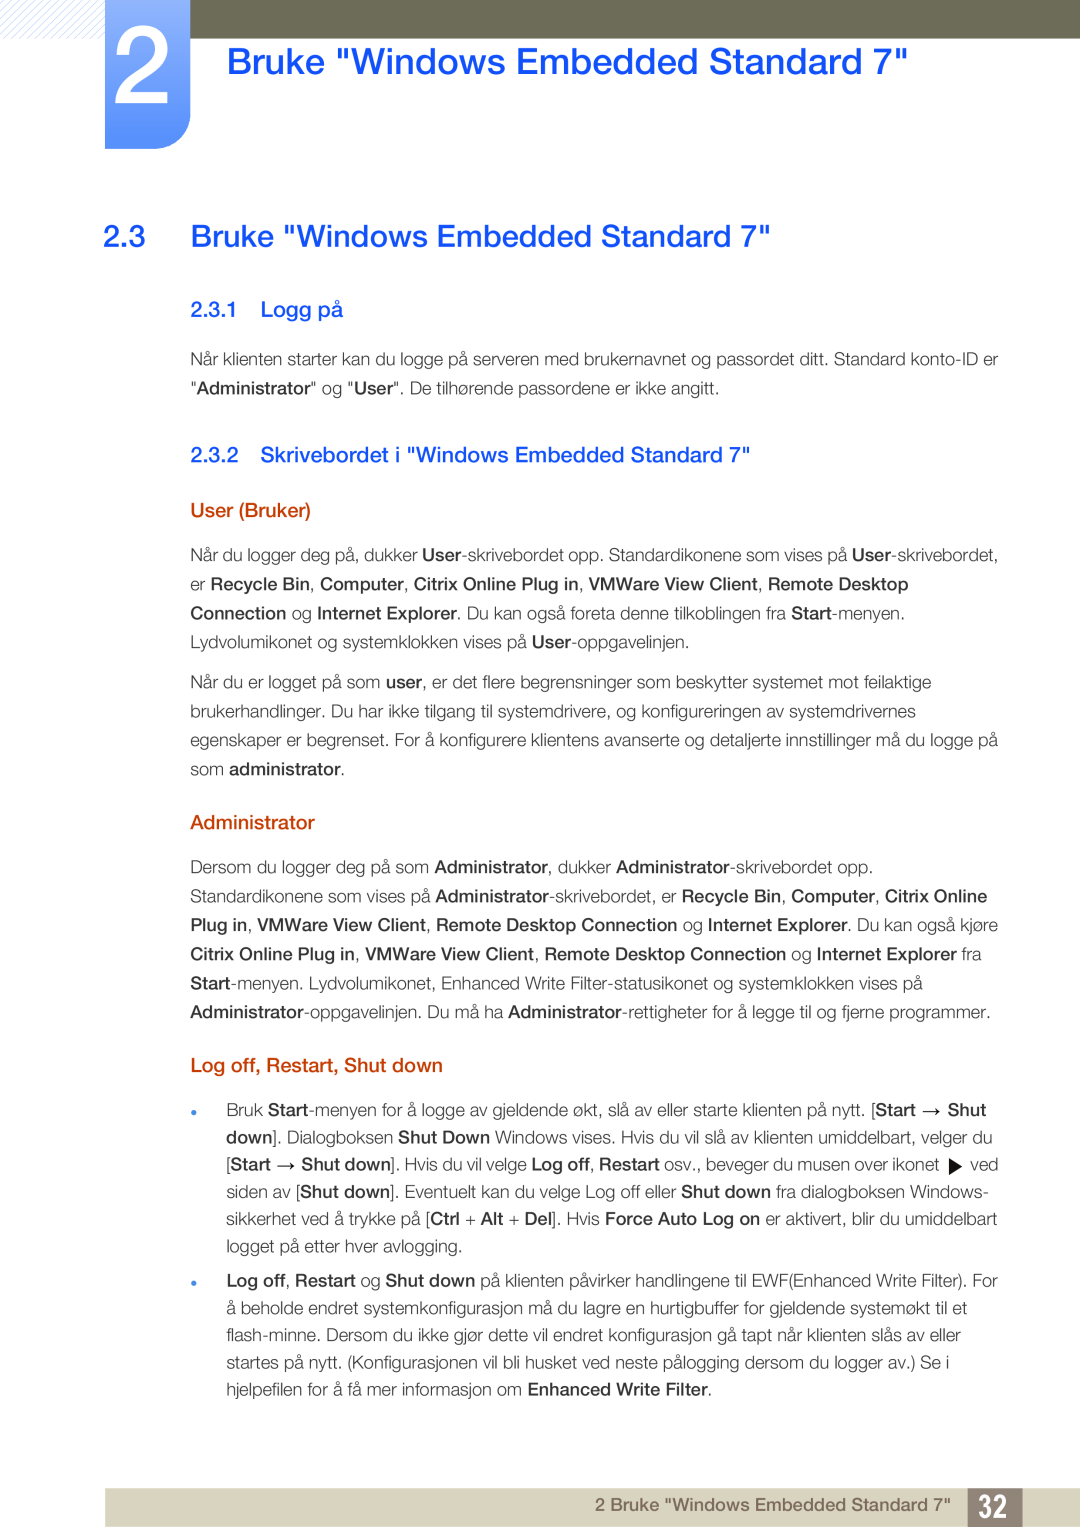 Samsung LF22TSWTBDN/EN Bruke Windows Embedded Standard, Logg på, Skrivebordet i Windows Embedded Standard, User Bruker 